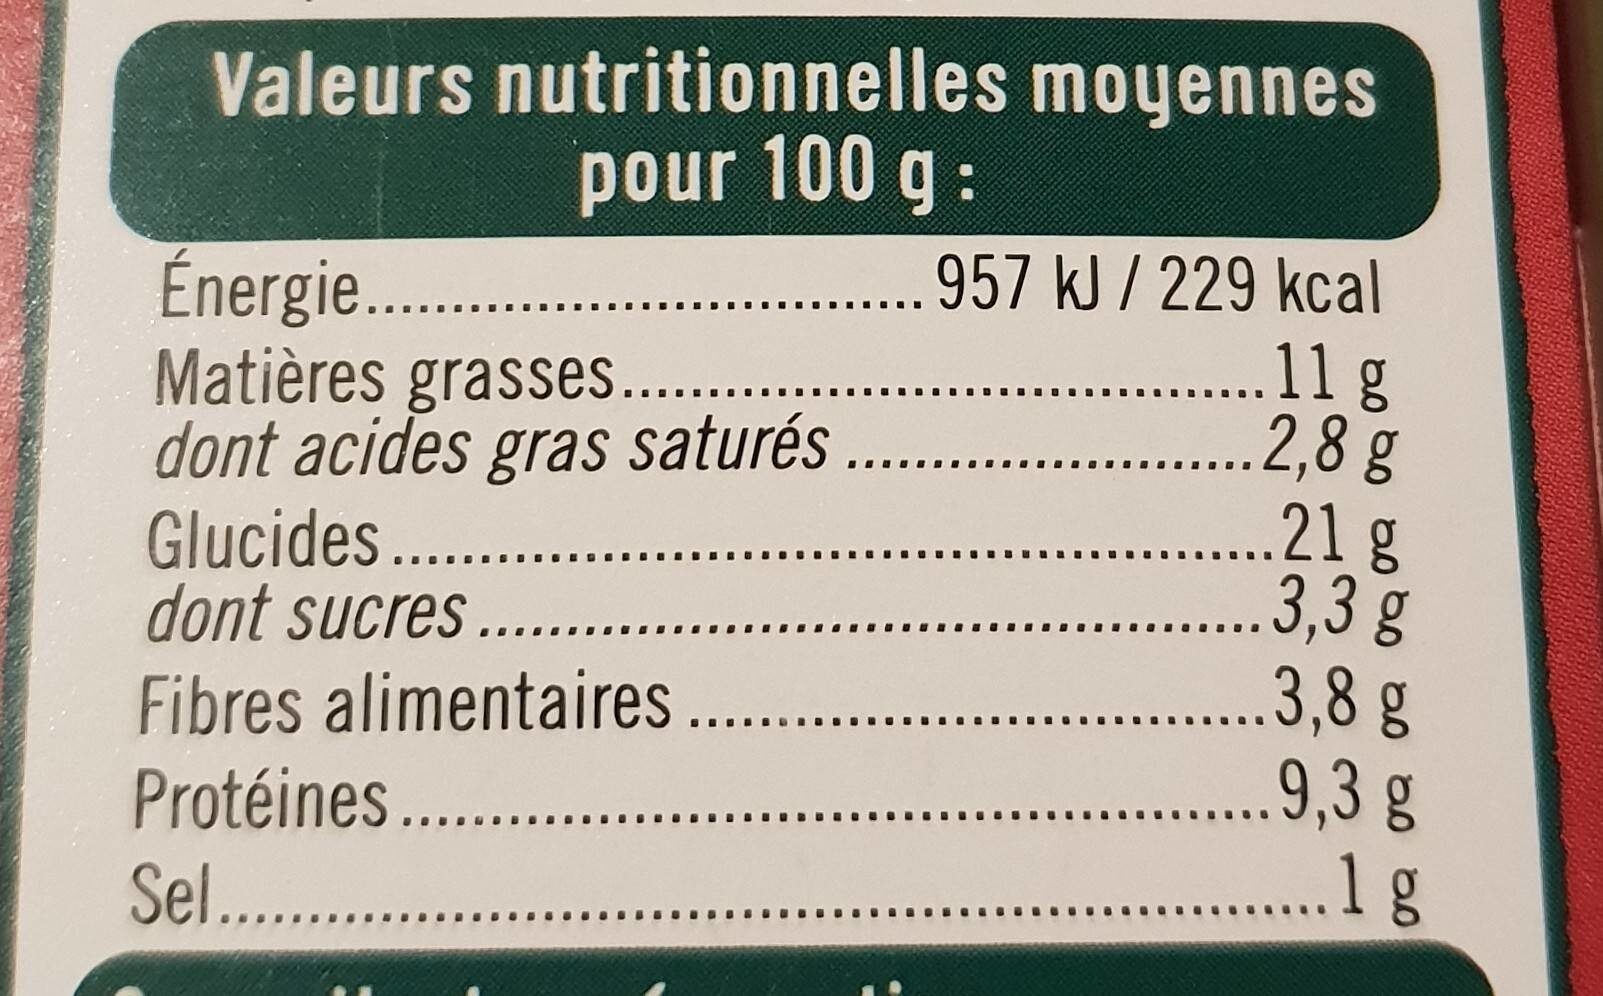 Panés au millet patate douce, aubergine paprika - Información nutricional - fr